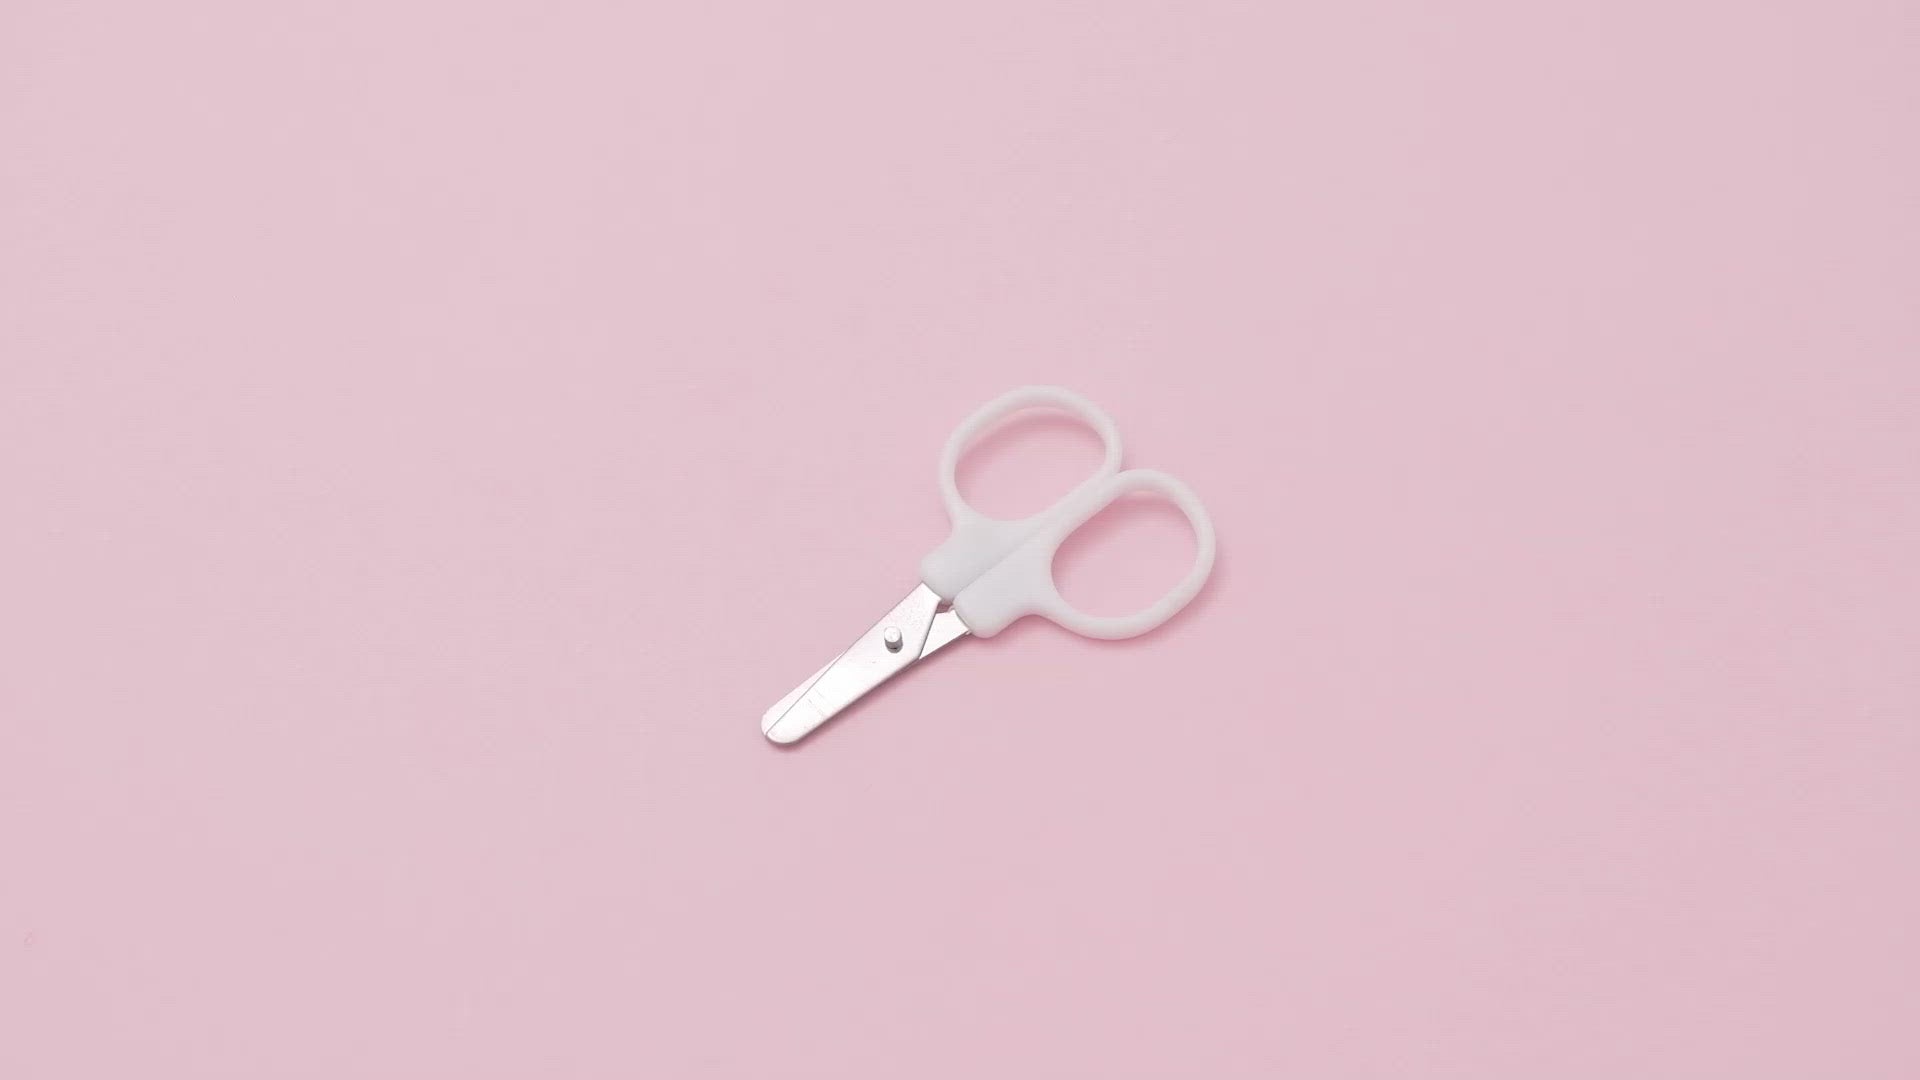 Mini Scissors - White